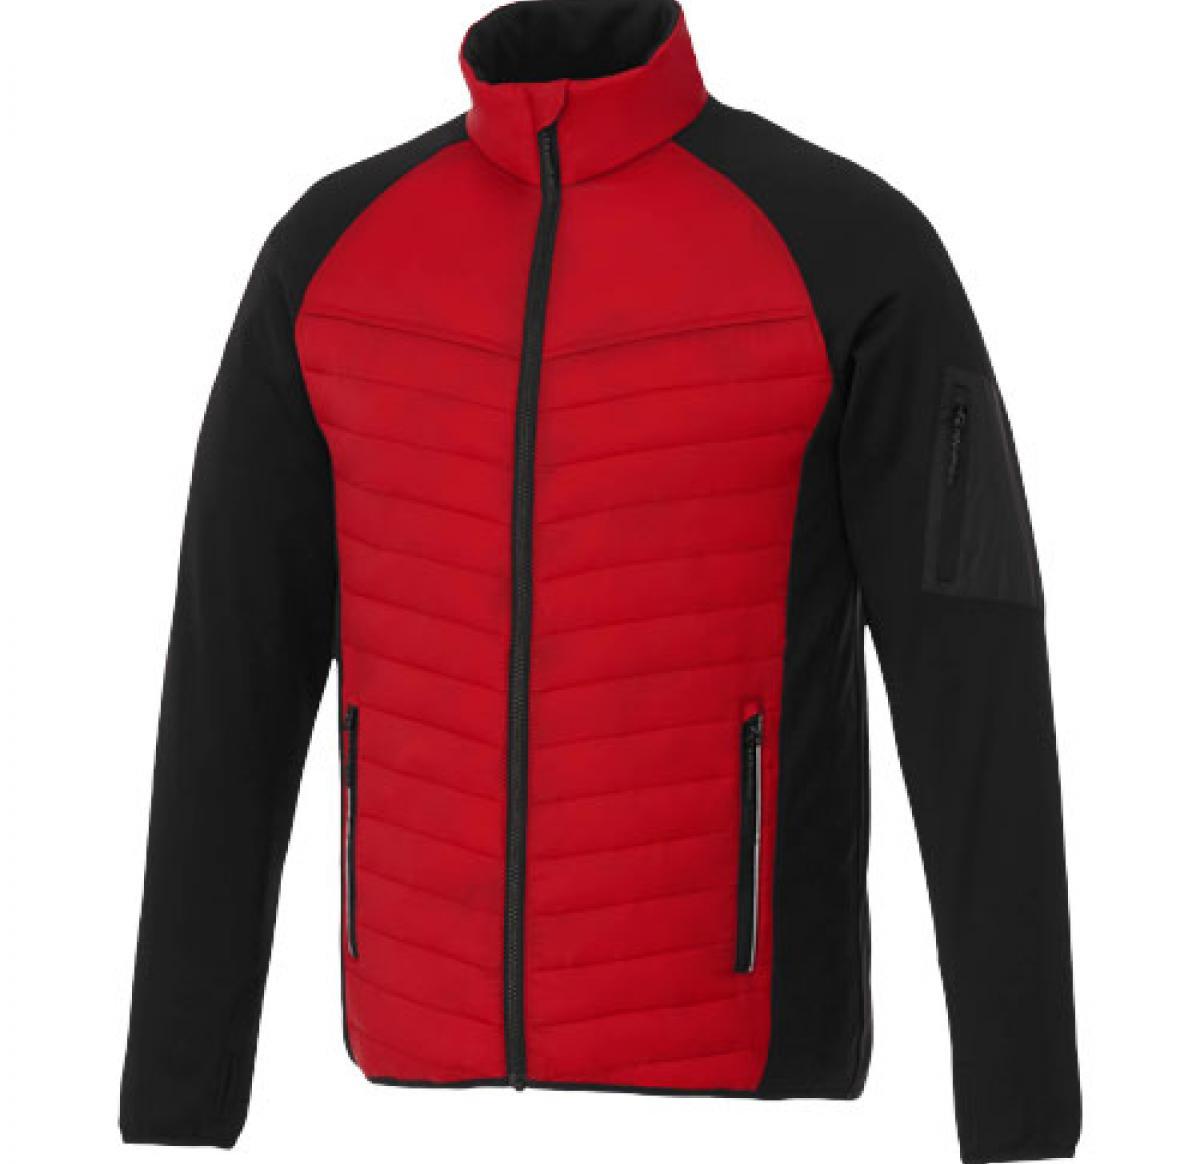 Elevate Banff hybrid insulated jacket